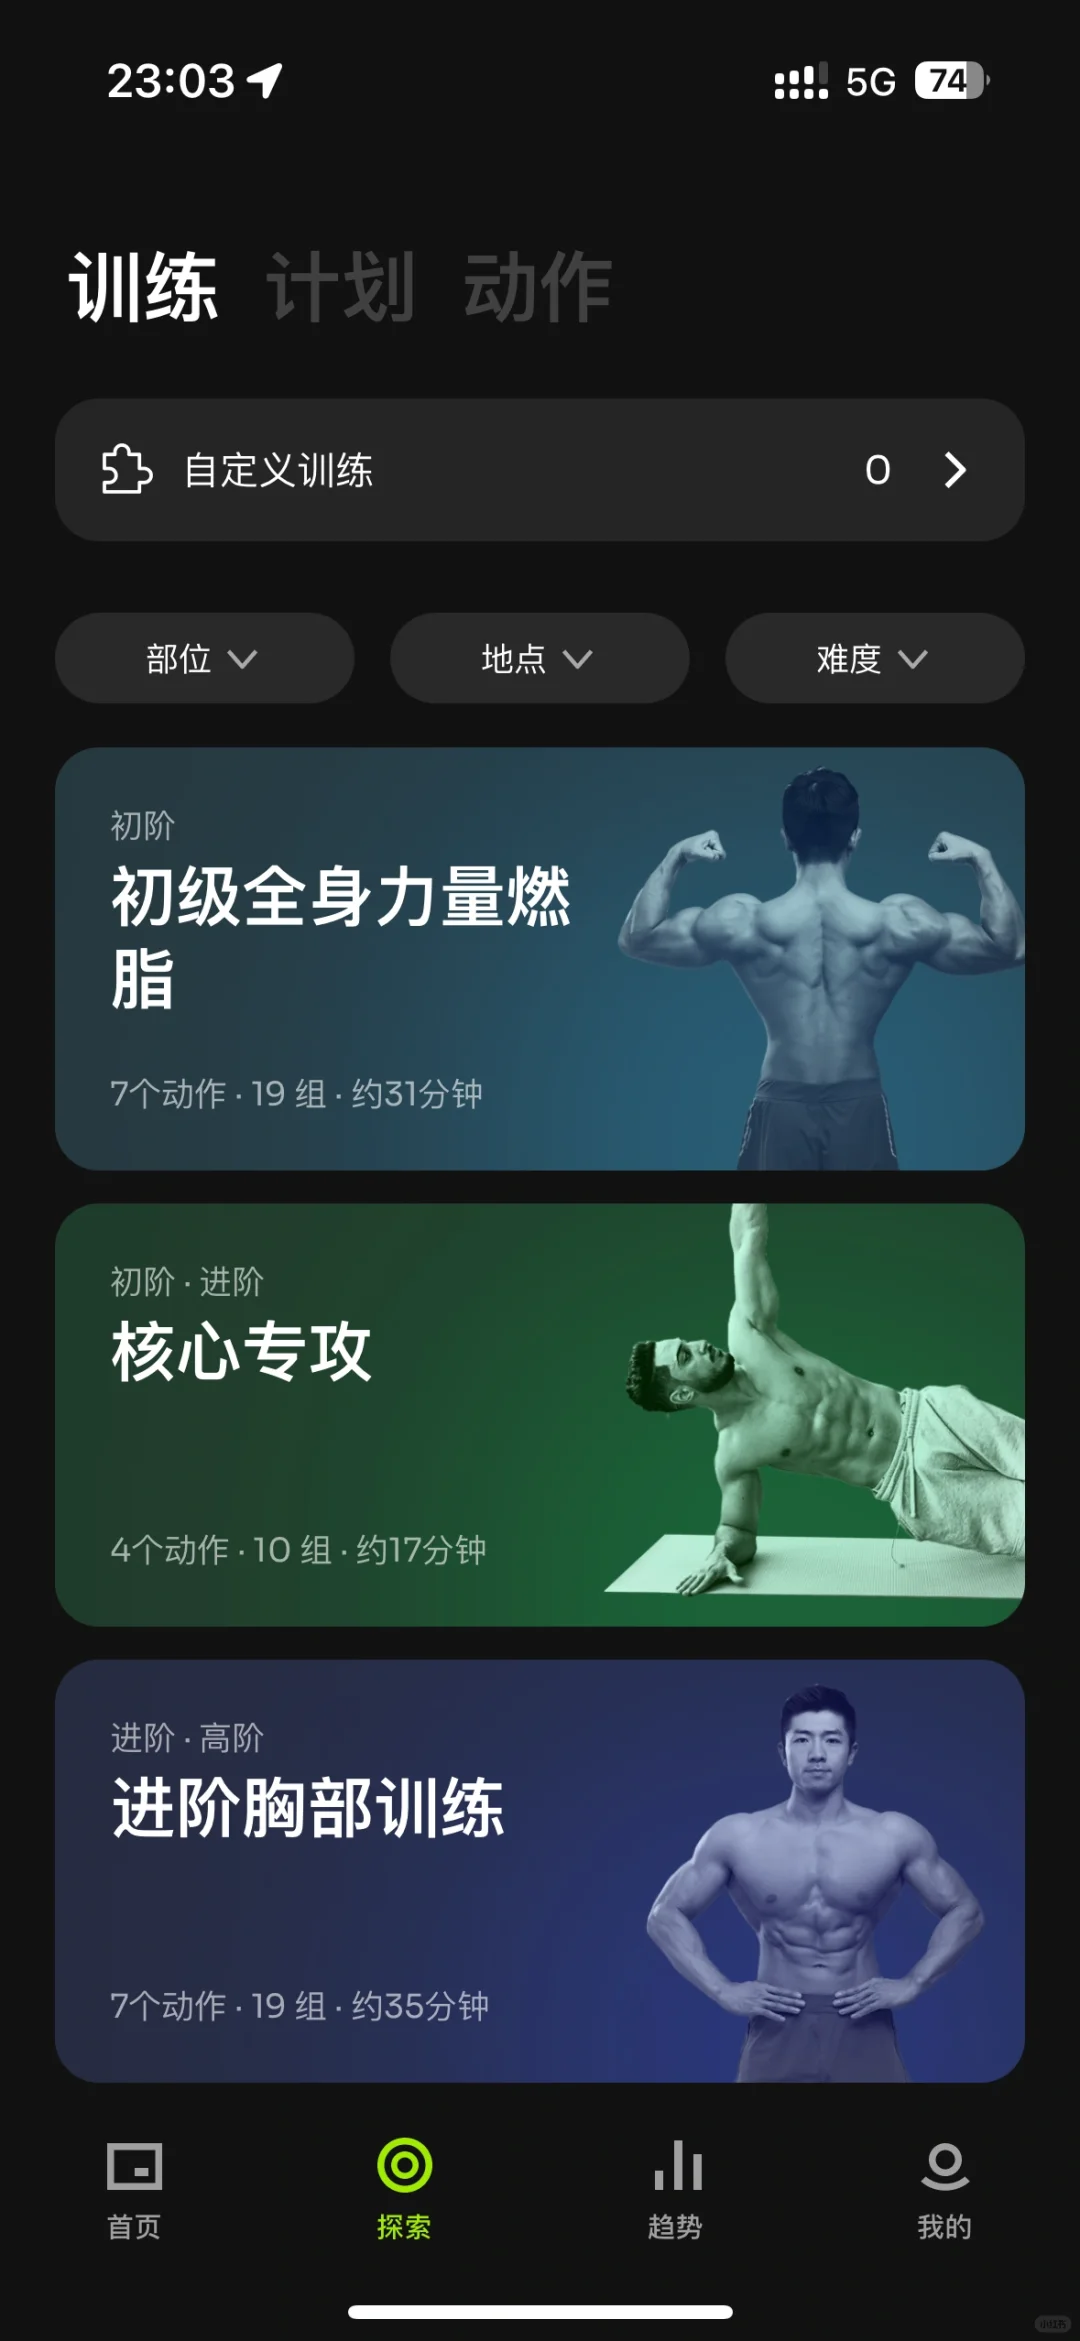 发现一款适合J人的健身App